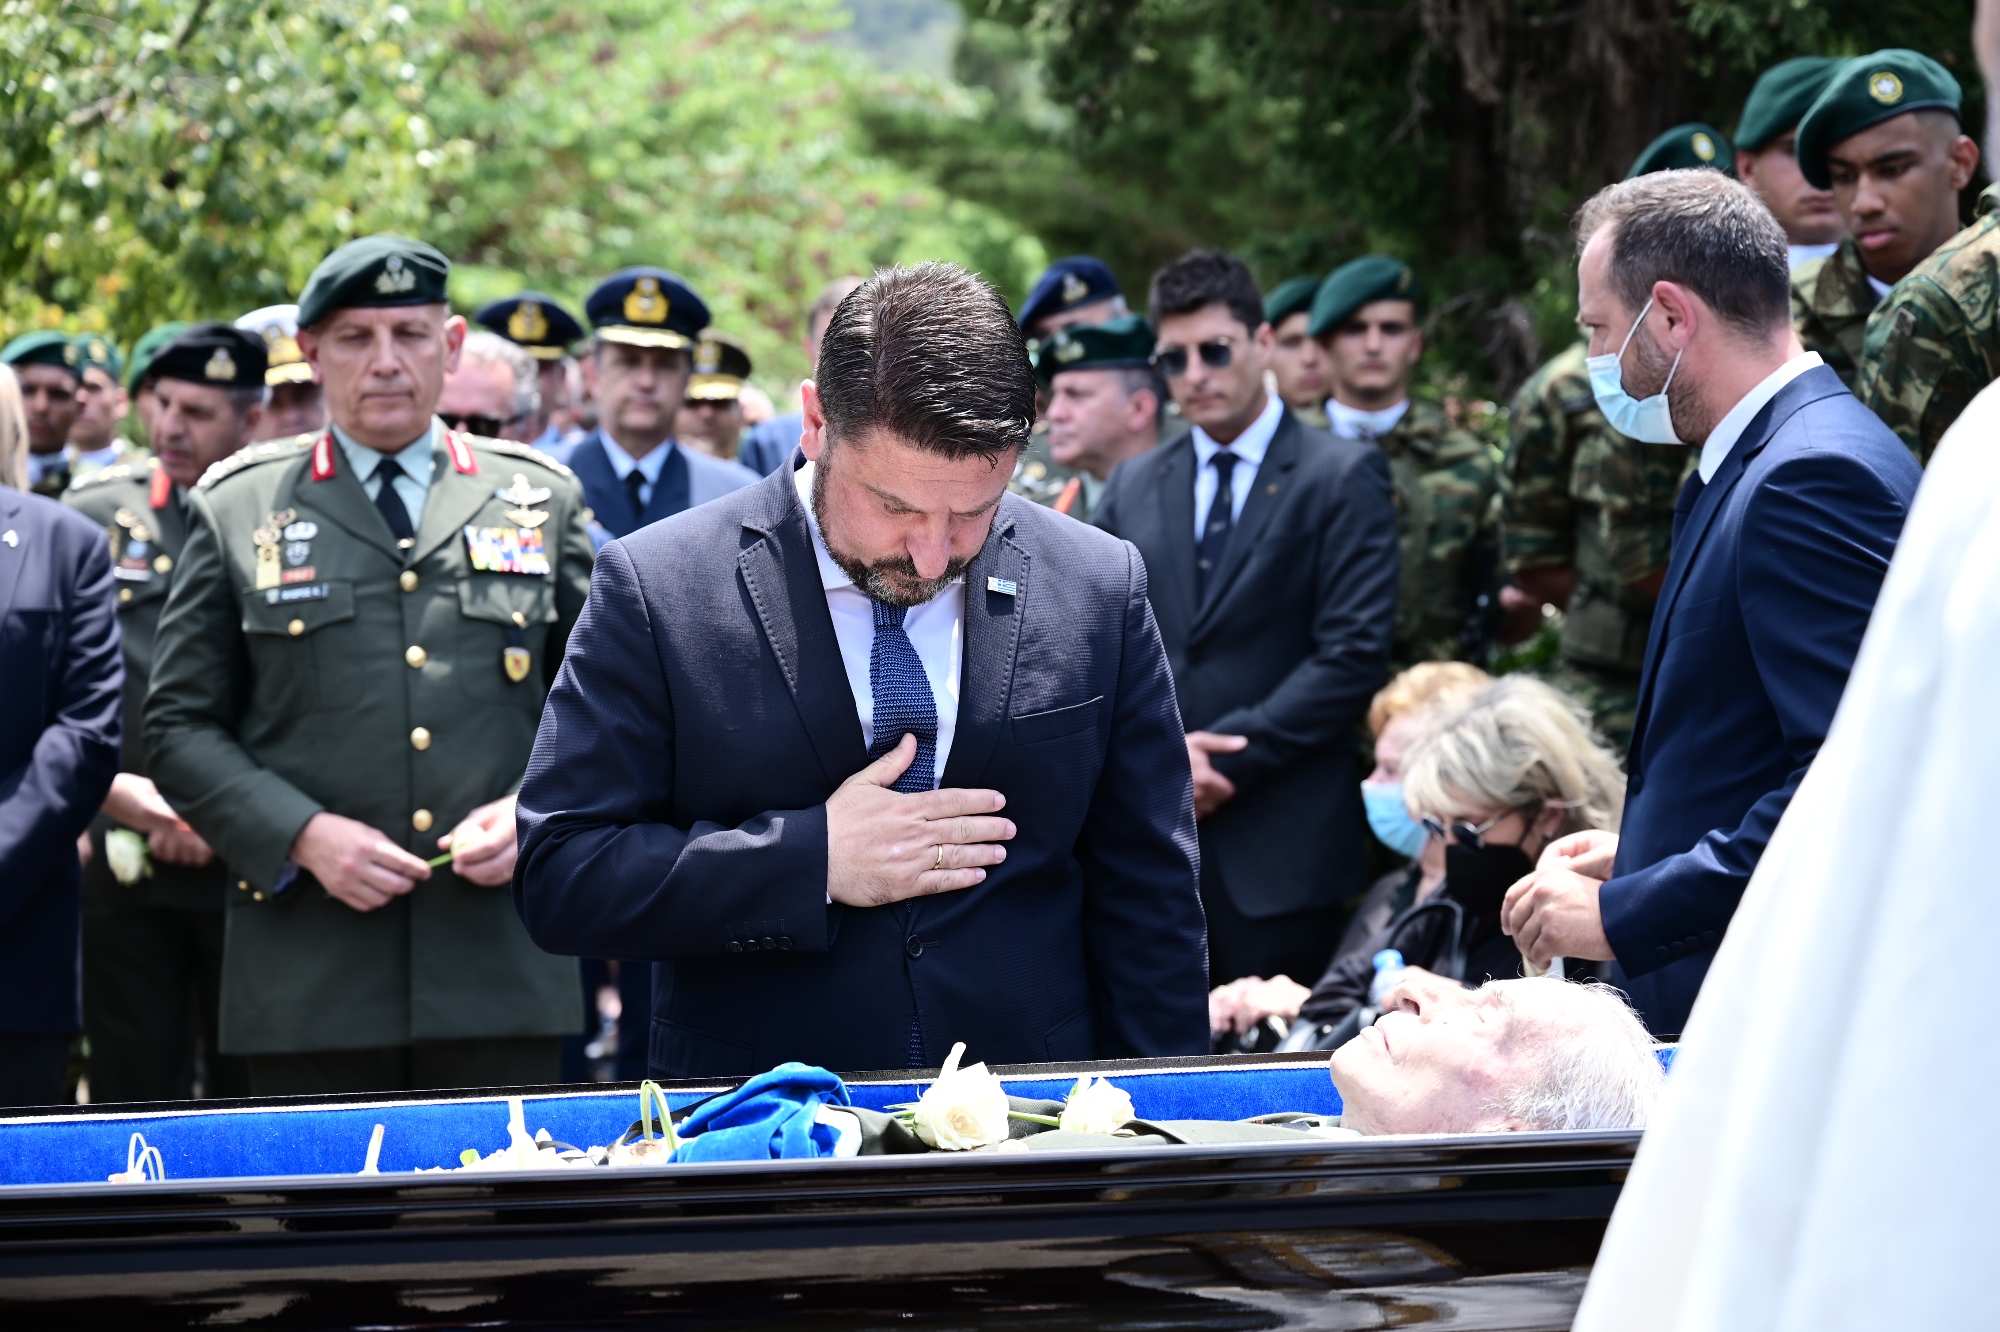 Παρουσία της πολιτικής και στρατιωτικής ηγεσίας κηδεύτηκε ο τελευταίος Ιερολοχίτης Καταδρομέας και ήρωας, στρατηγός Κωνσταντίνος Κόρκας